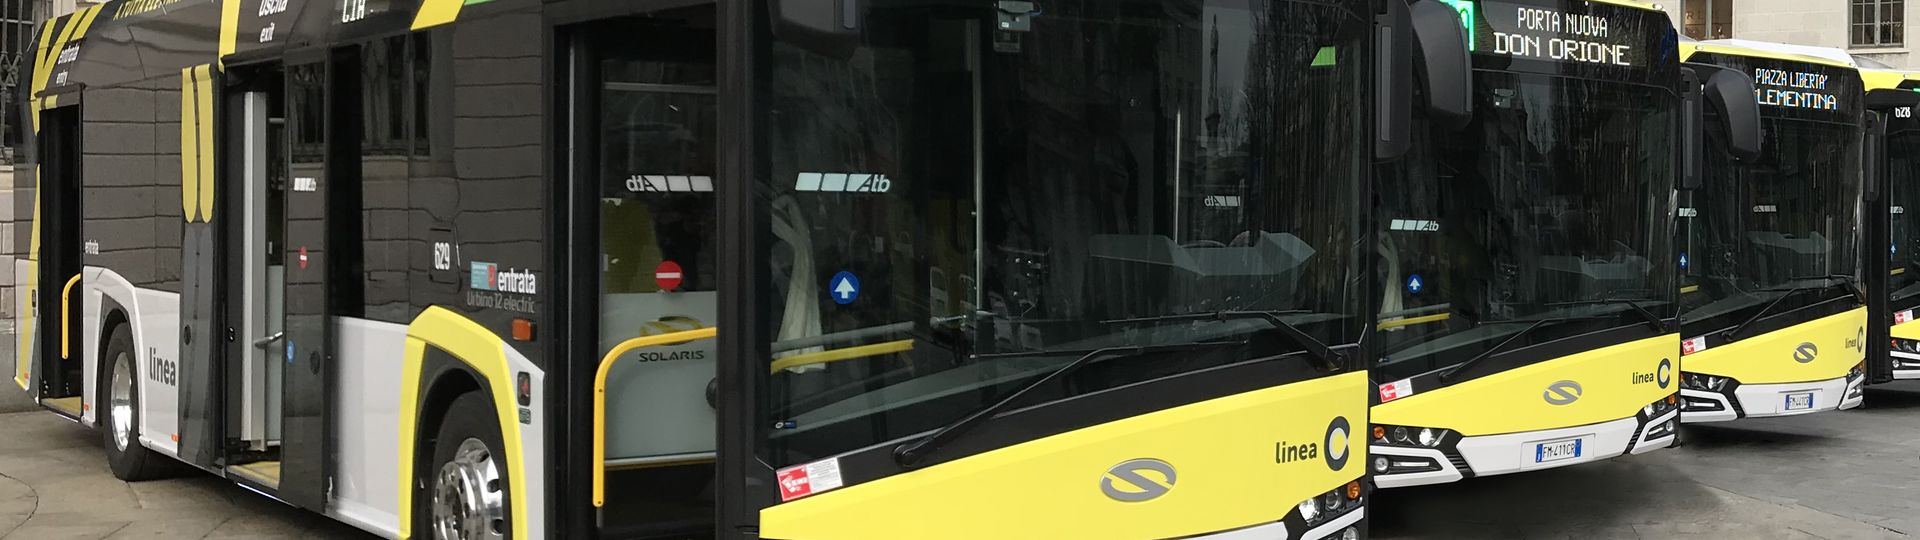 Solaris hat 12 Elektrobusse nach Bergamo geliefert